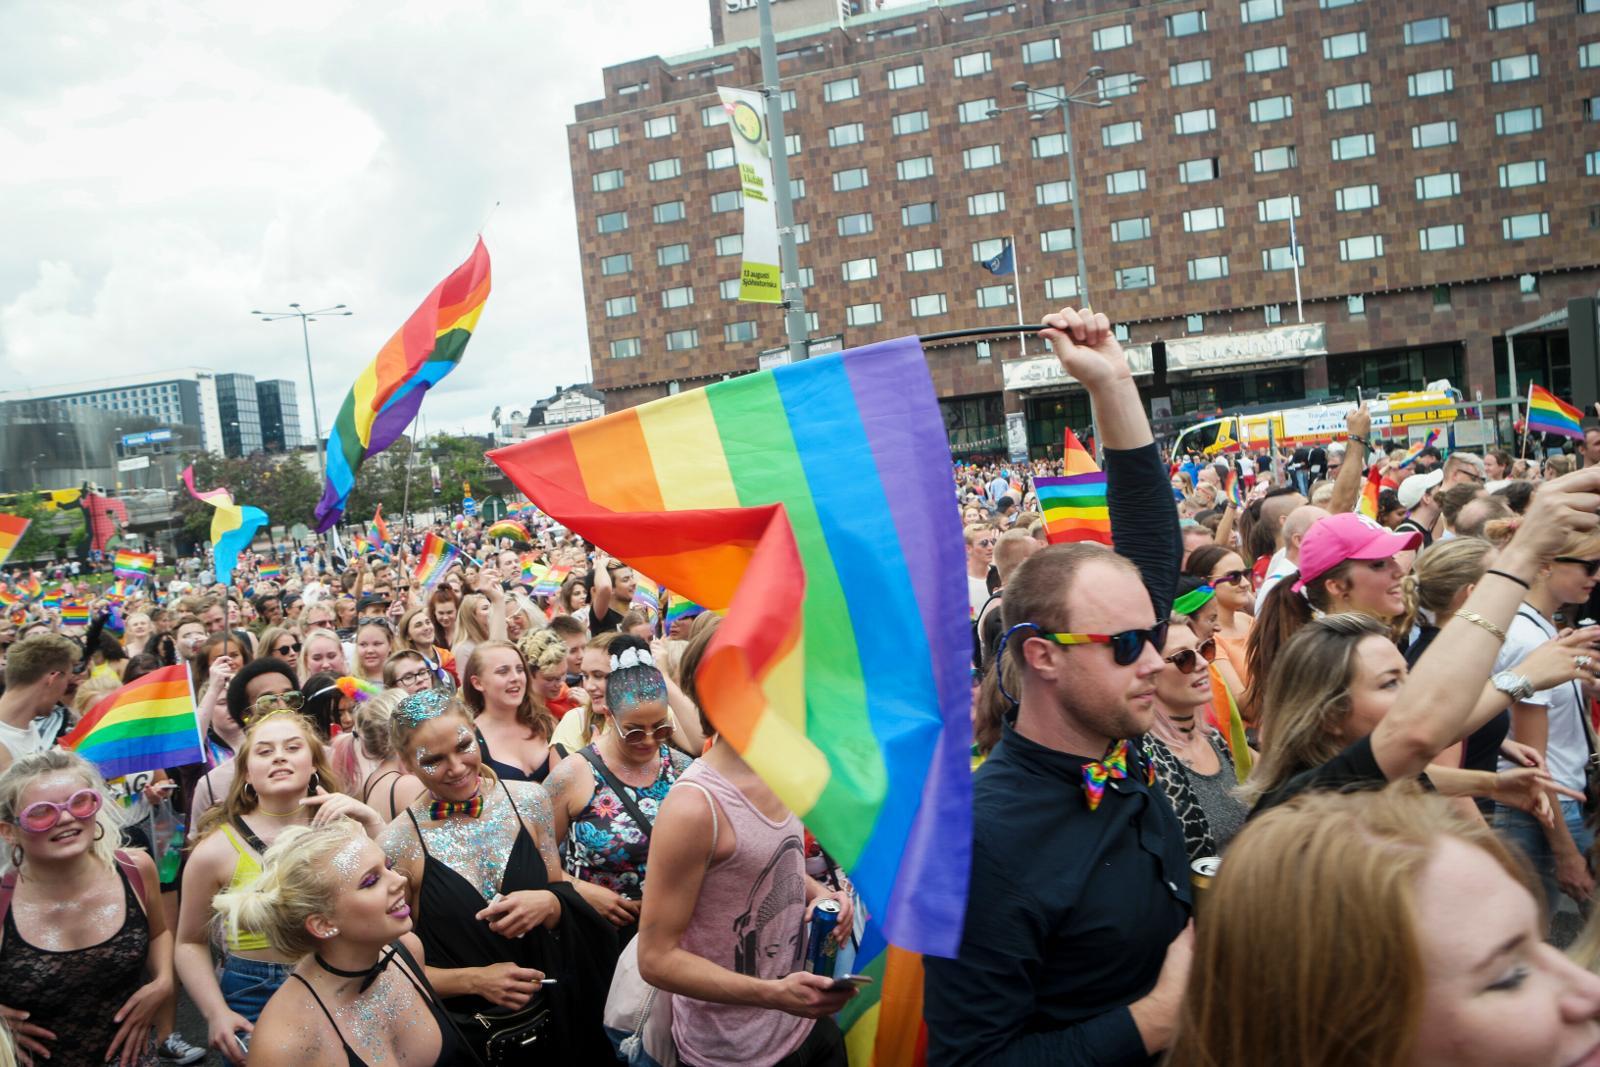 Många signaler. Att delta i Pridetåget signalerar så mycket mer än det Ebba Busch Thor motiverar sitt deltagande med, skriver debattören.